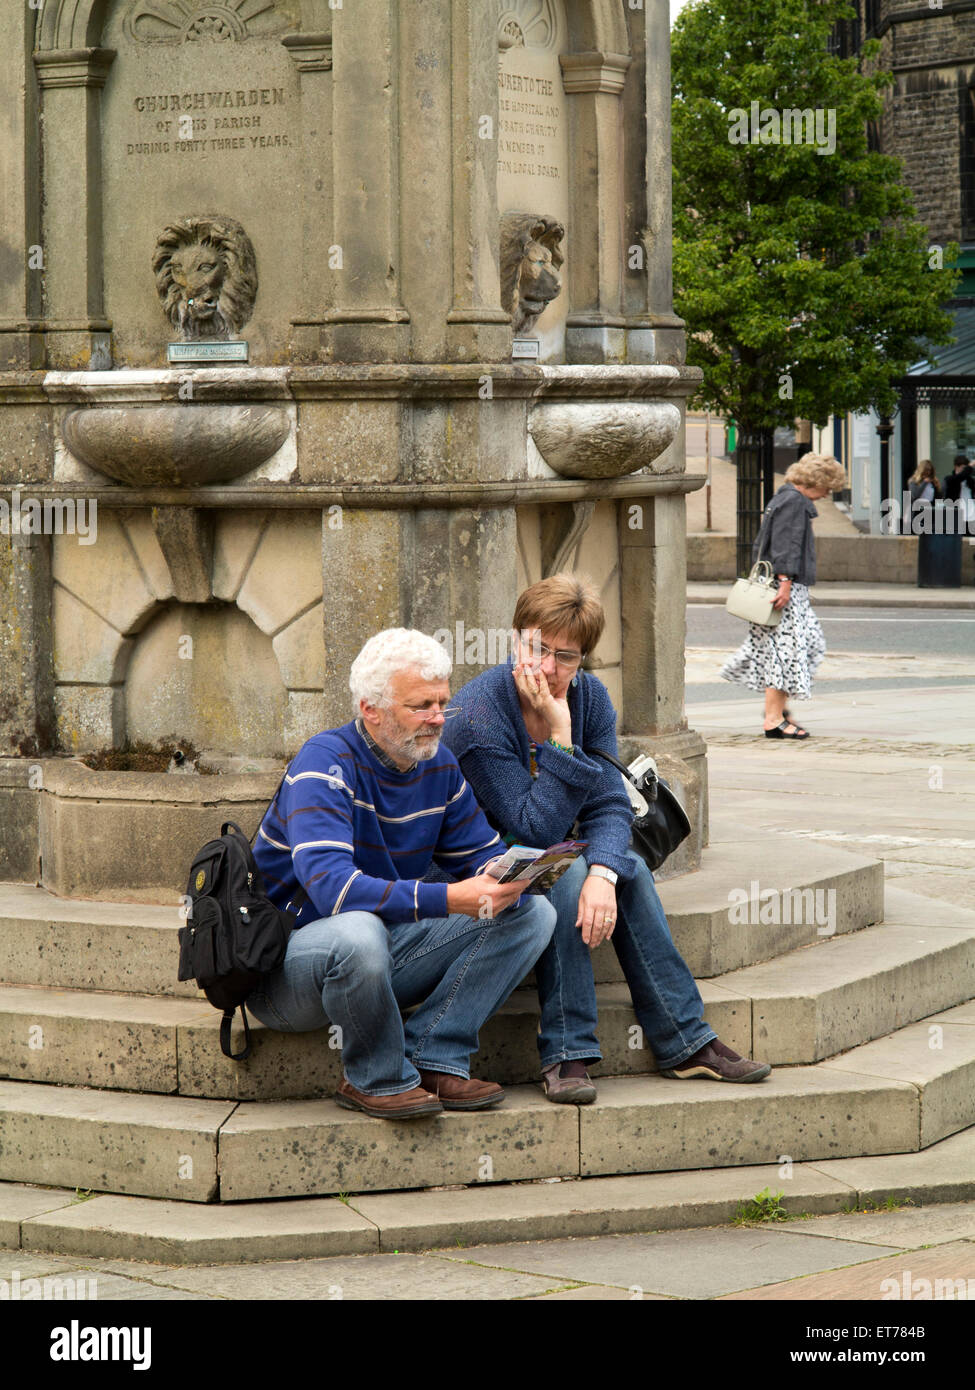 Großbritannien, England, Derbyshire, Buxton, The Crescent, paar saß auf Samuel Turner Memorial Trinkbrunnen Schritte Stockfoto